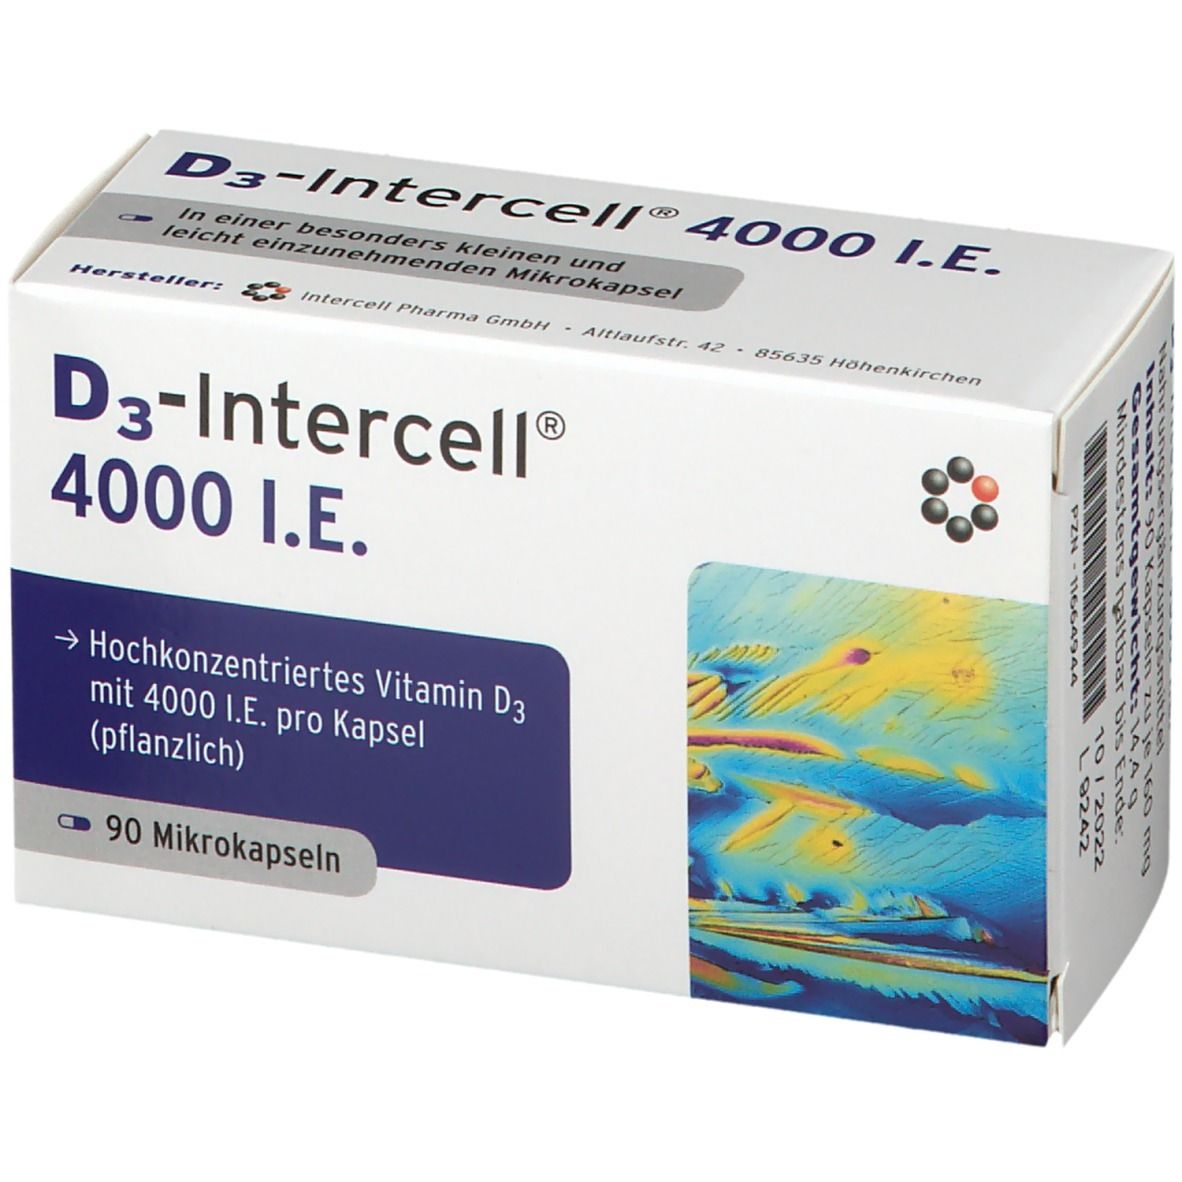 D3-Intercell® 4000 I.E.